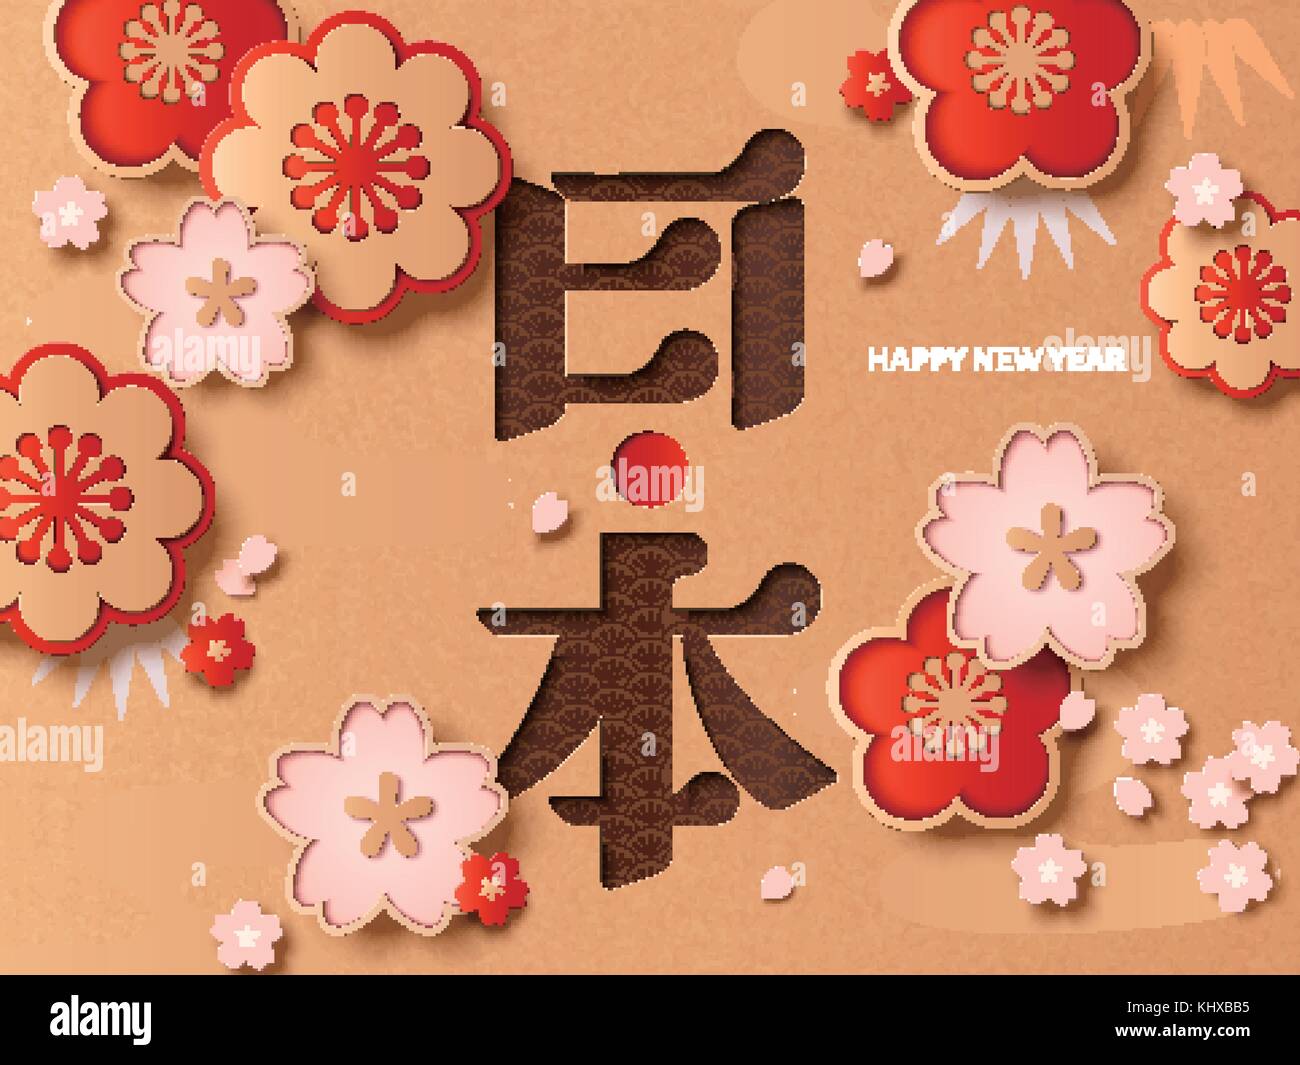 Le Japon traditionnel concept nouvel an, carte de souhaits gracieux avec fleur de cerisier fleur de prune et d'éléments, le Japon nom de pays en mot japonais Illustration de Vecteur